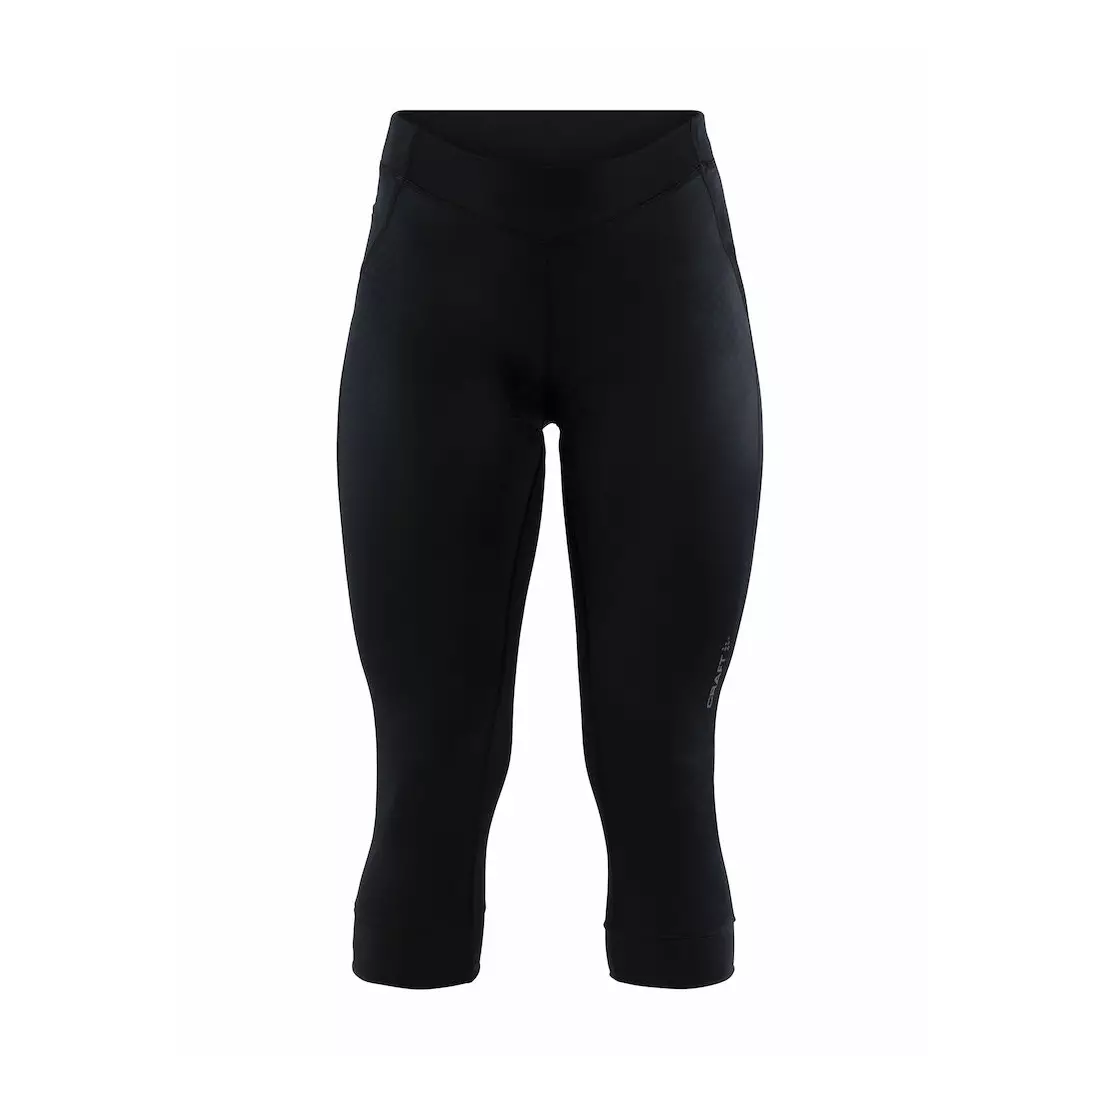 Pantaloni scurți de ciclism 3/4 pentru femei CRAFT RISE, negri 1906077-999999